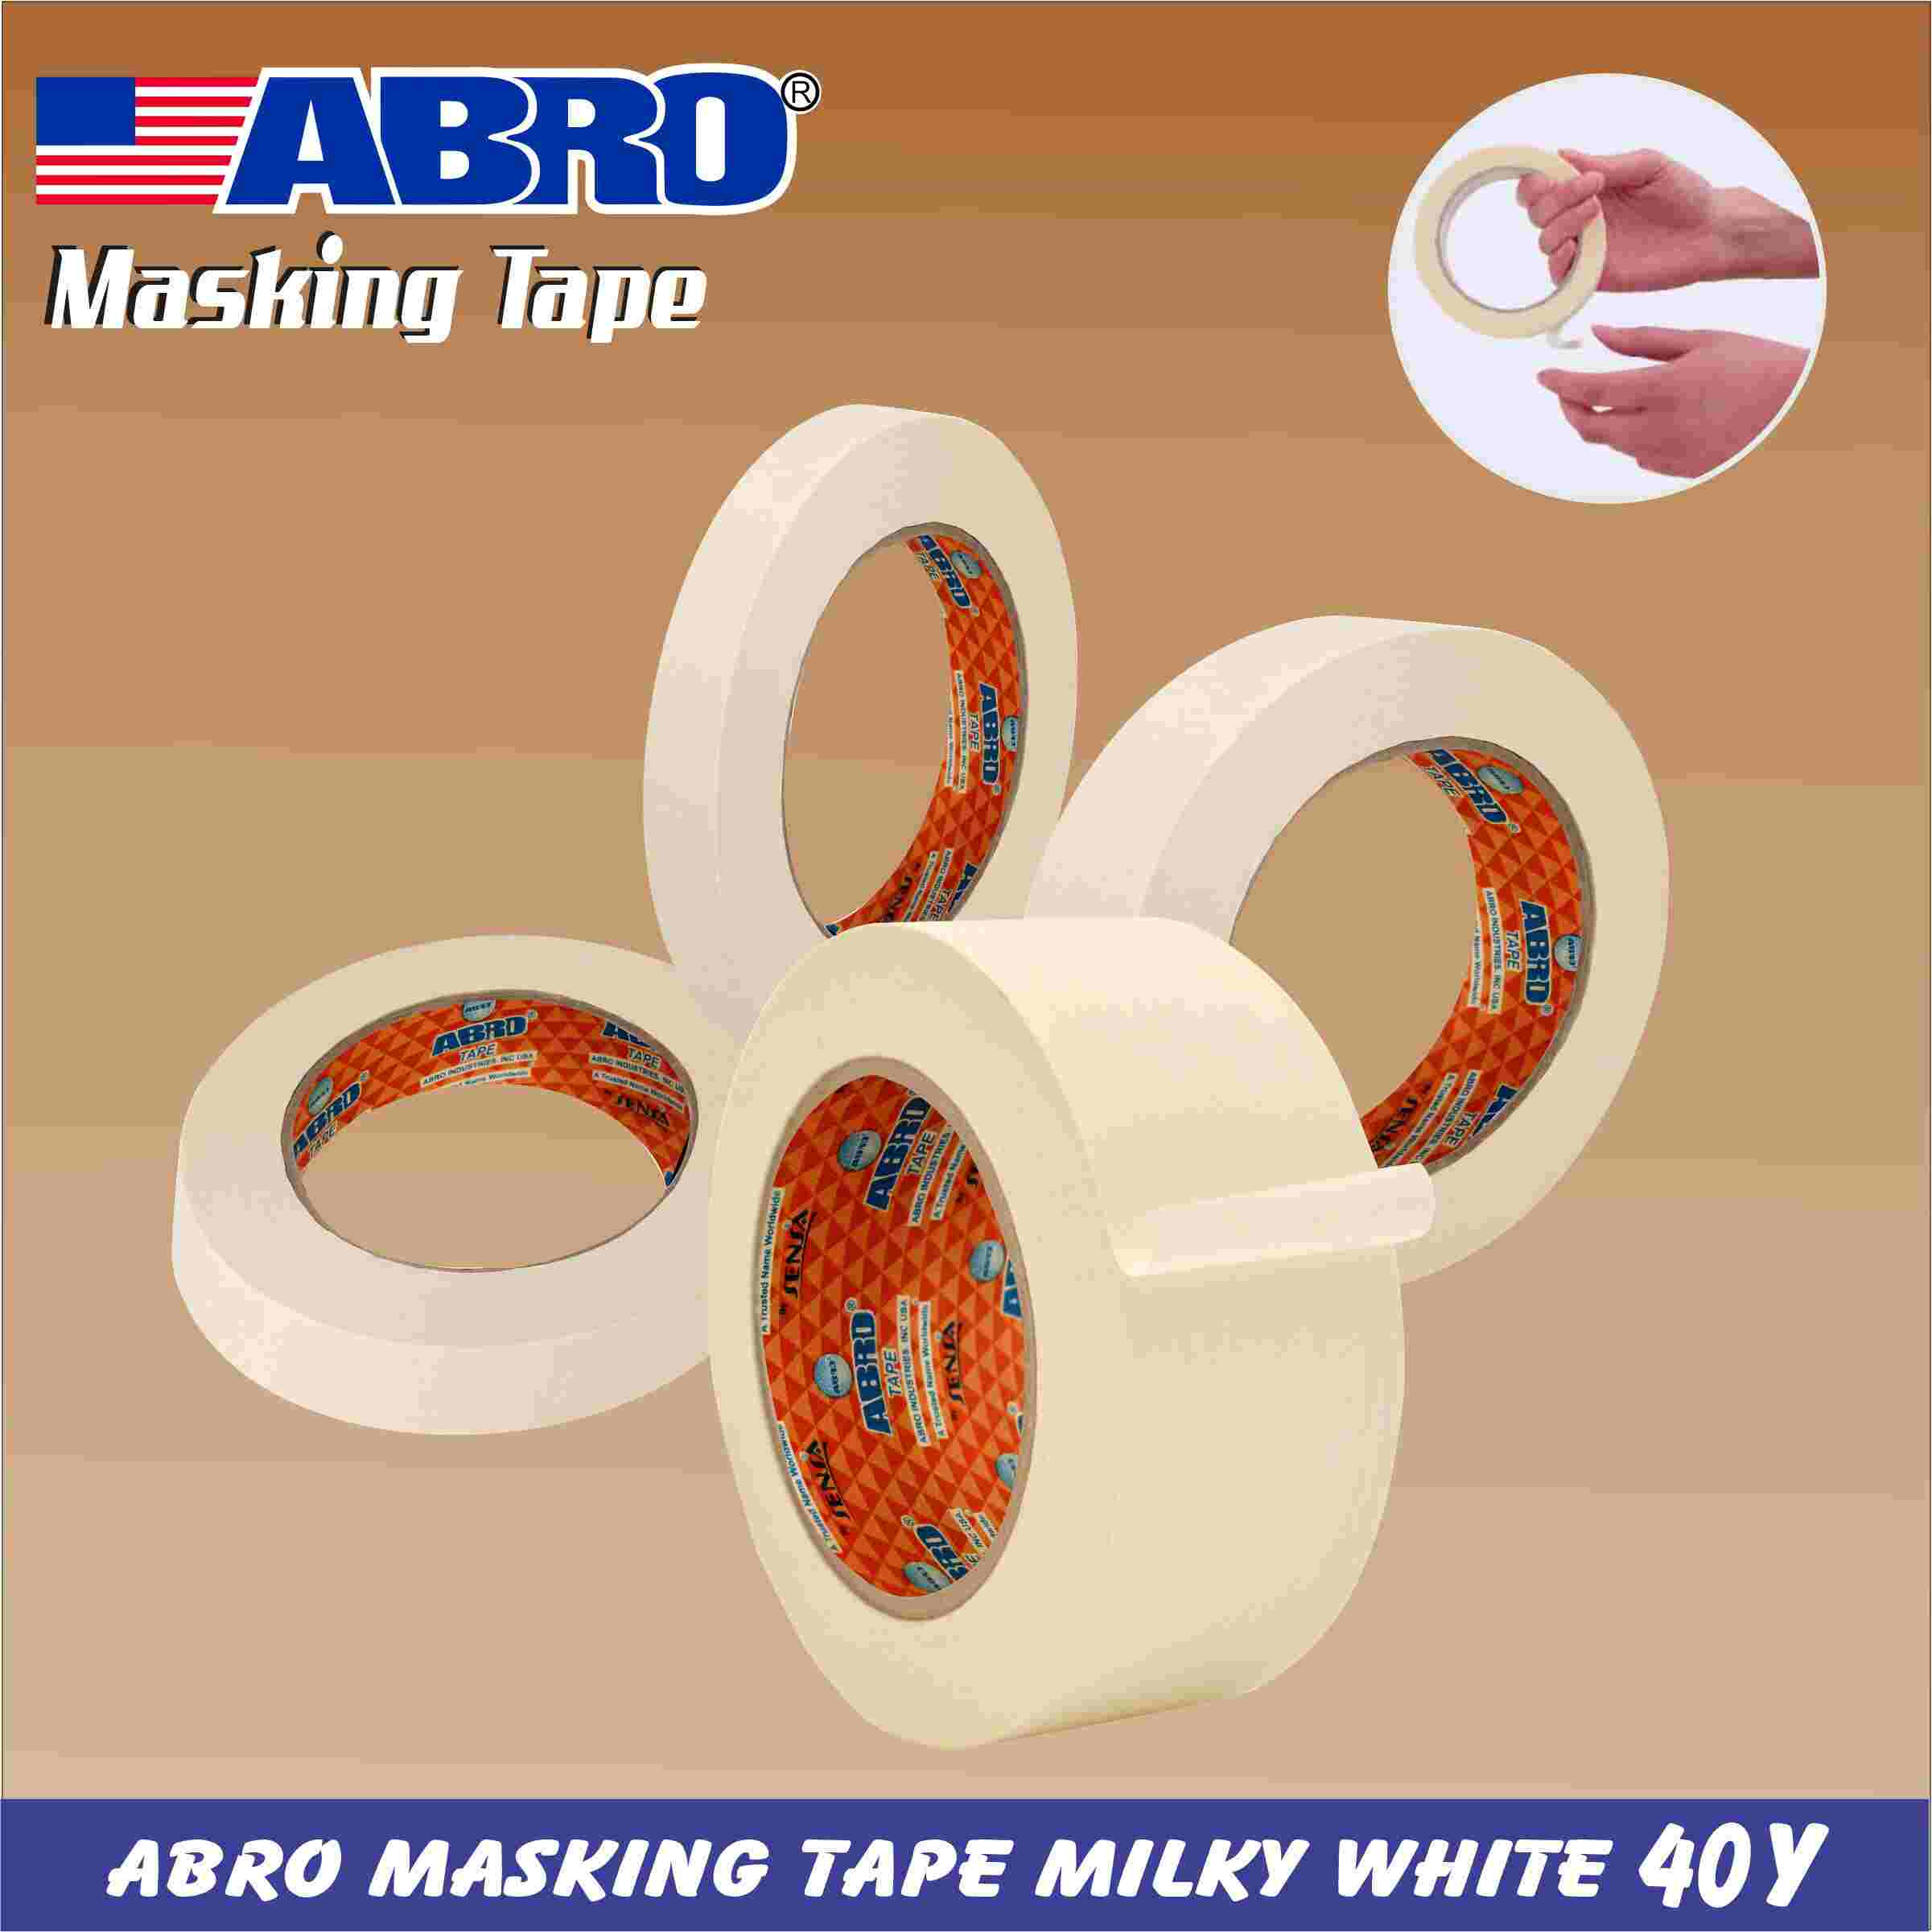 Abro Masking Tape Milky White 40y